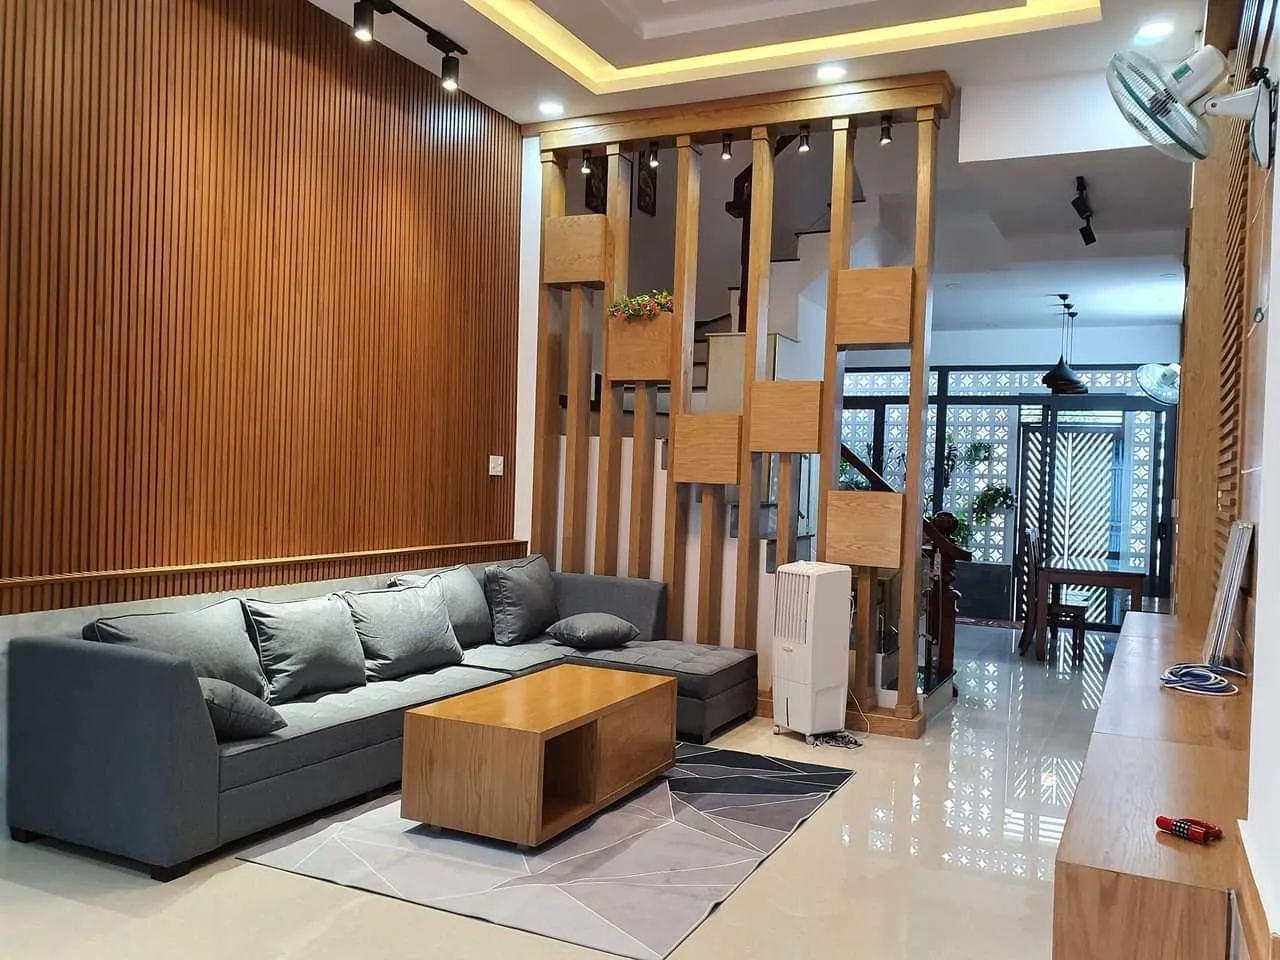 Phòng khách nhà ống 4m với ốp vách lam gỗ và bộ ghế sofa màu trầm, mang đến một không gian vừa đơn giản, vừa tinh tế